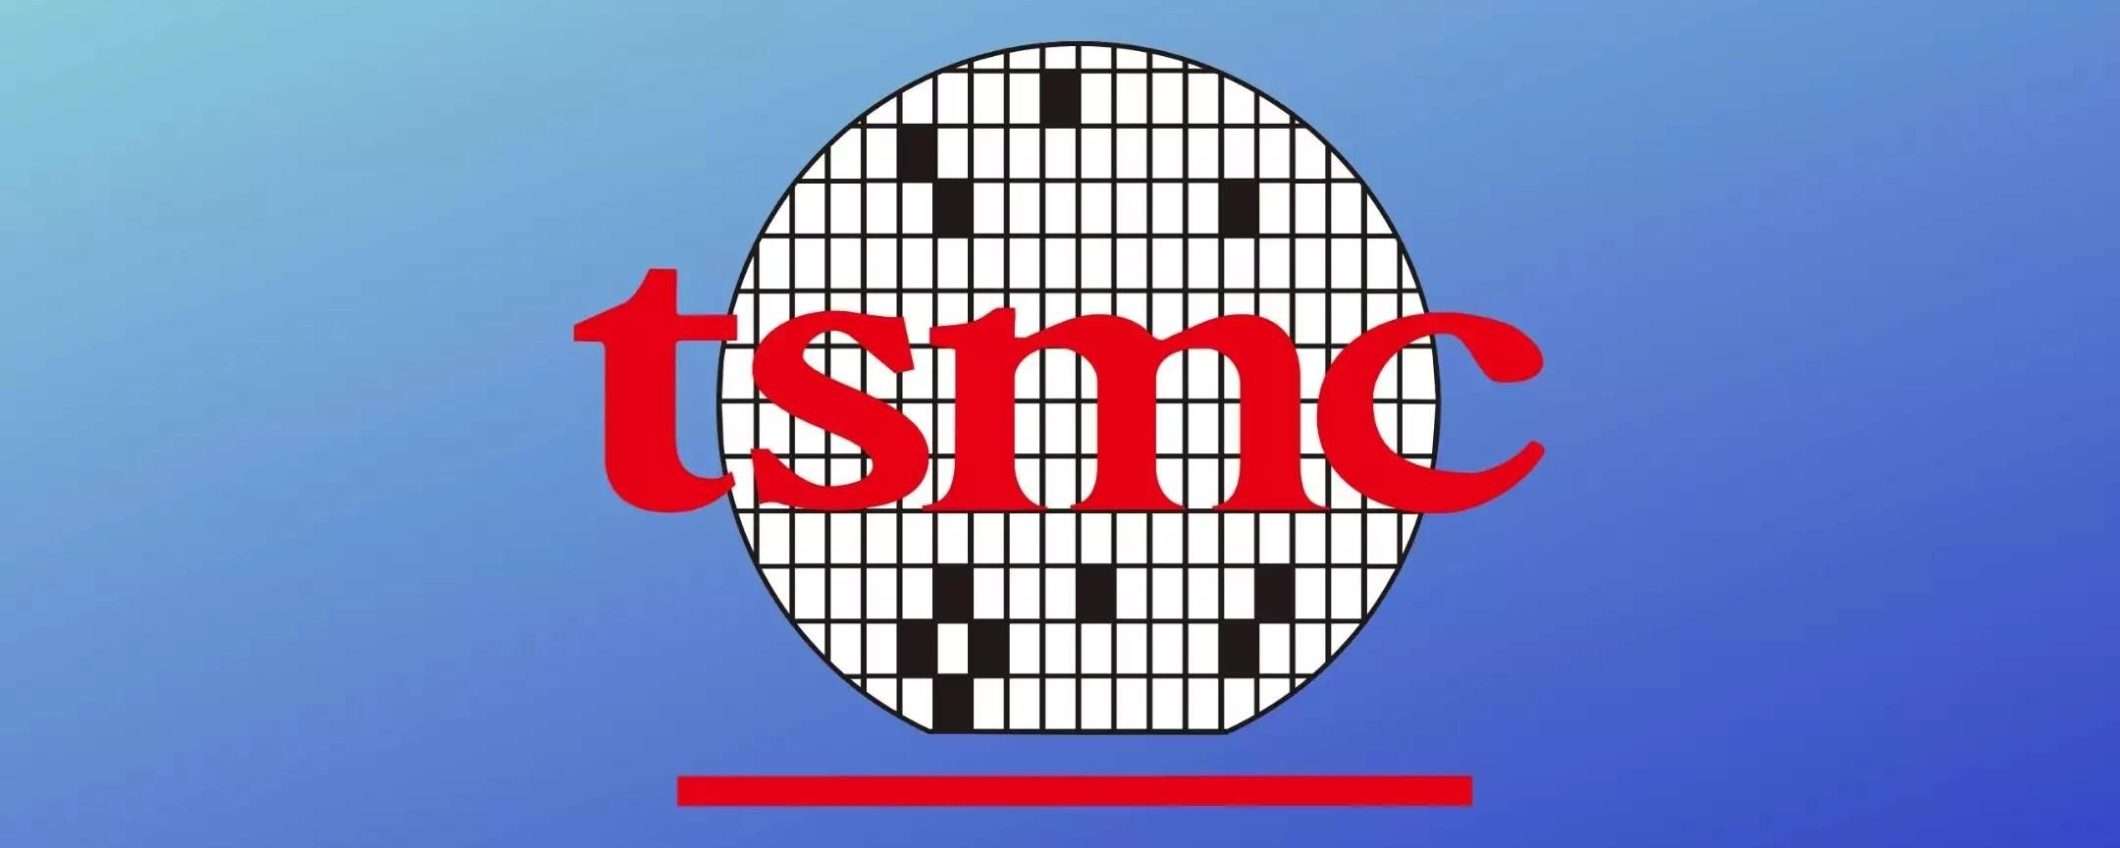 Tim Cook conferma: Apple userà chip di TSMC 